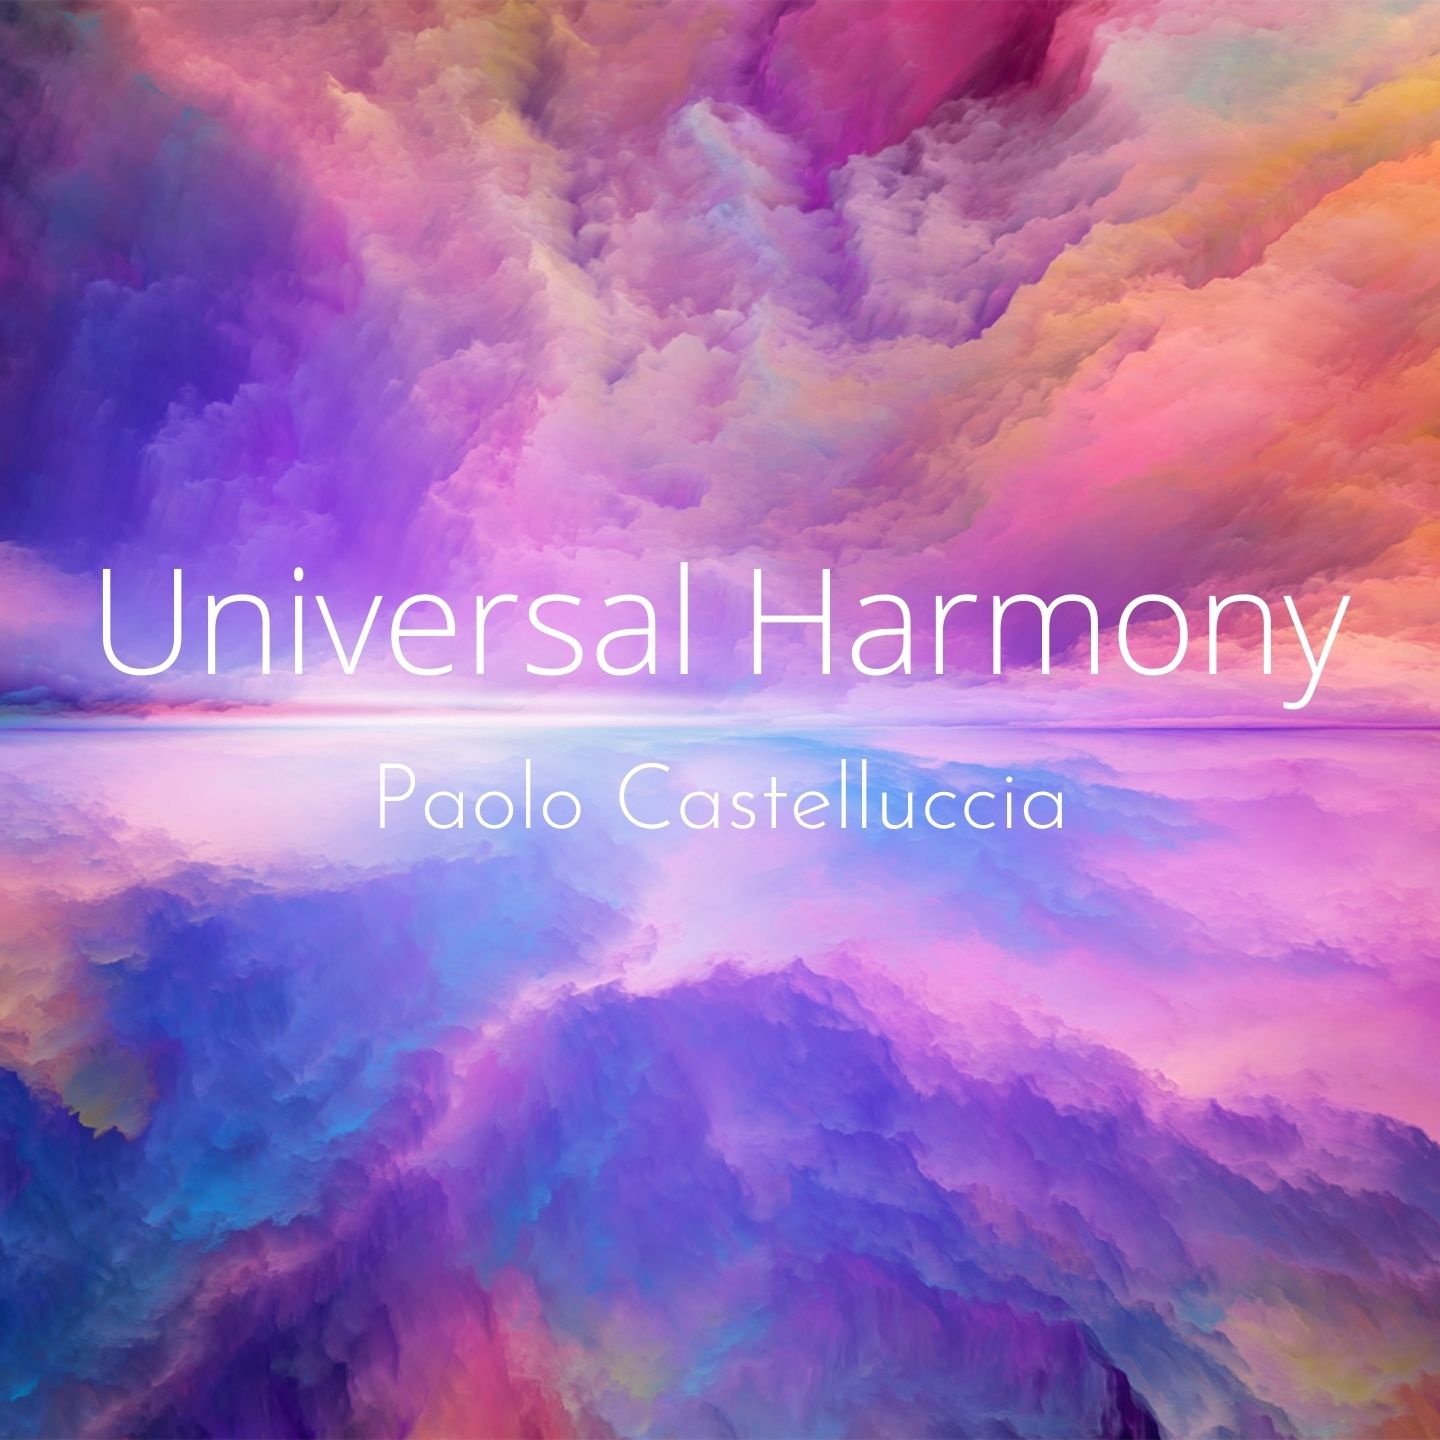 Universal Harmony